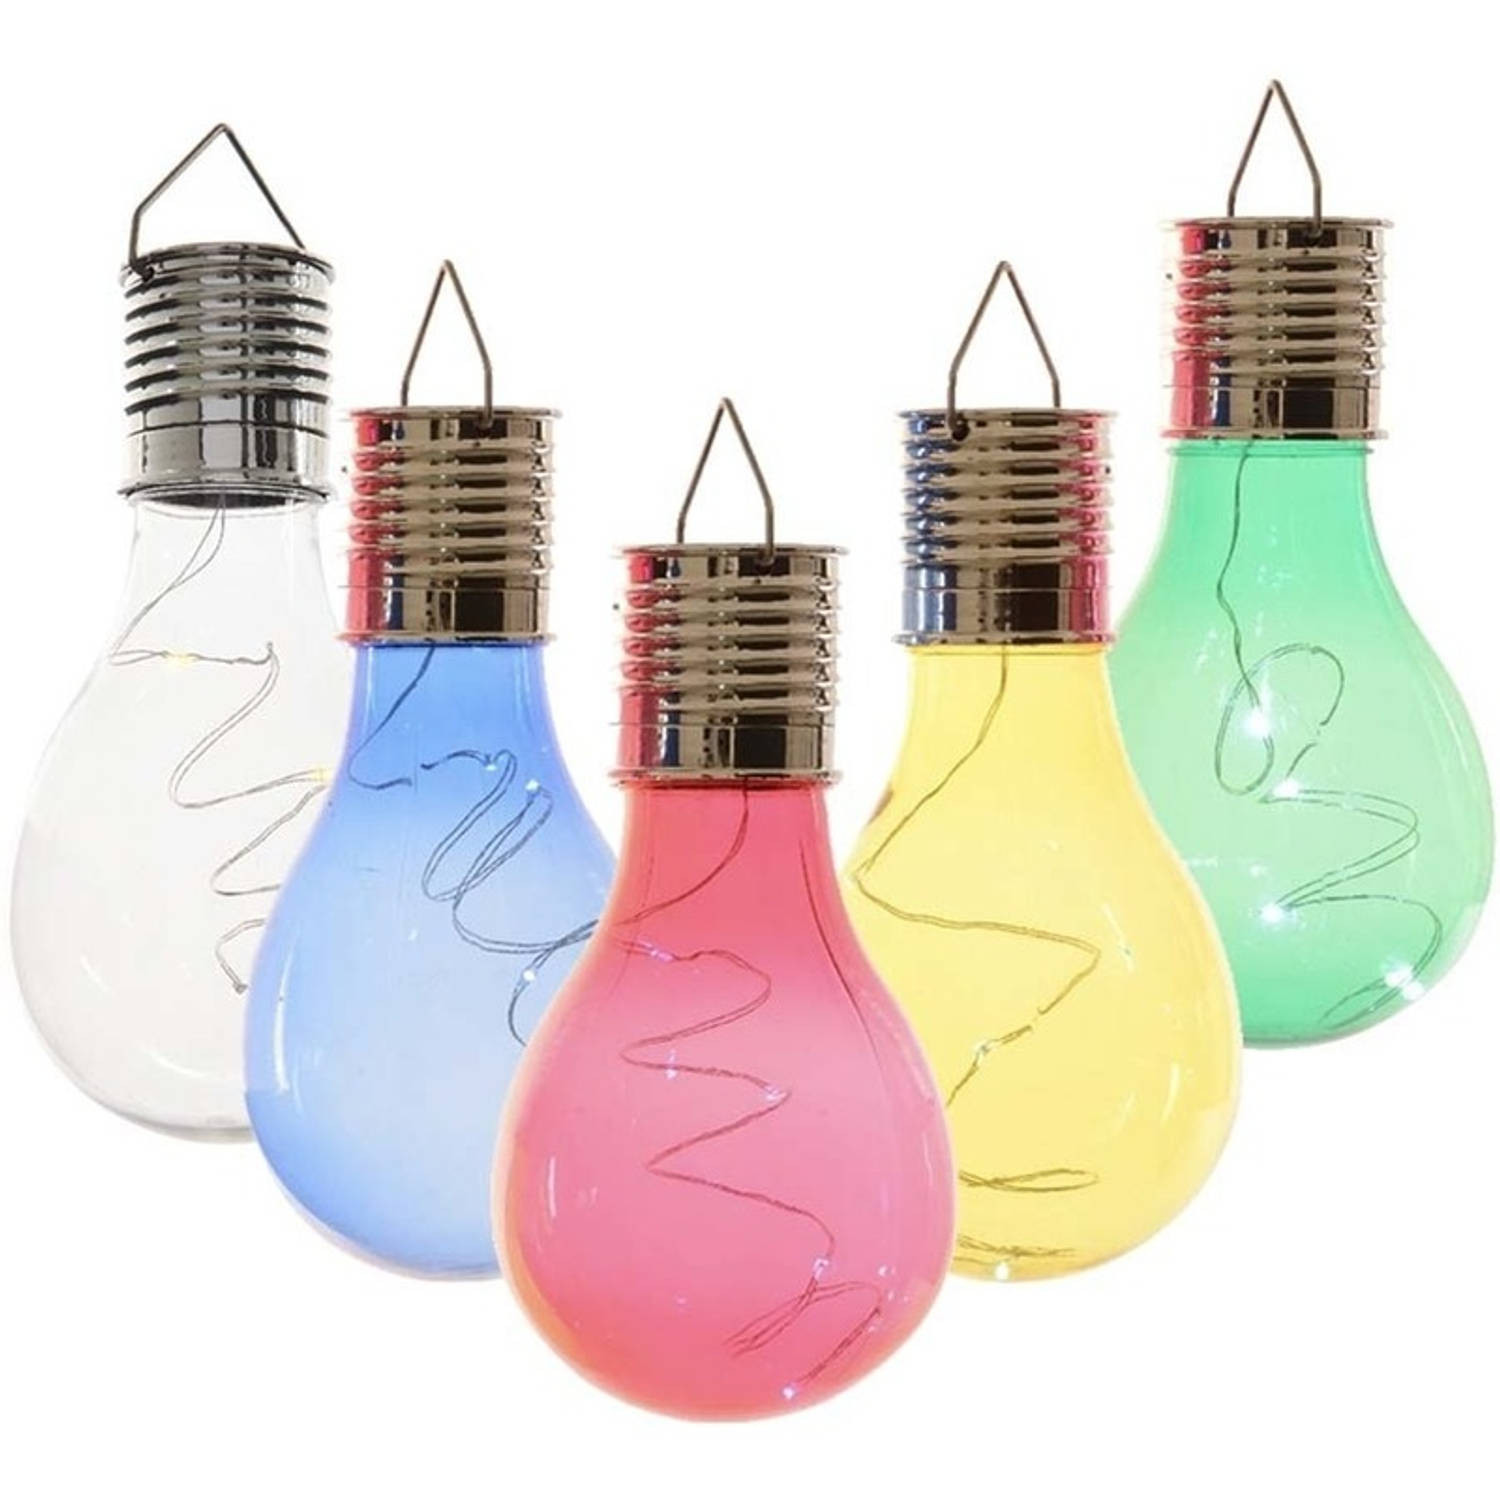 5x Buitenlampen/tuinlampen lampbolletjes/peertjes 14 cm transparant/blauw/groen/geel/rood - Buitenverlichting